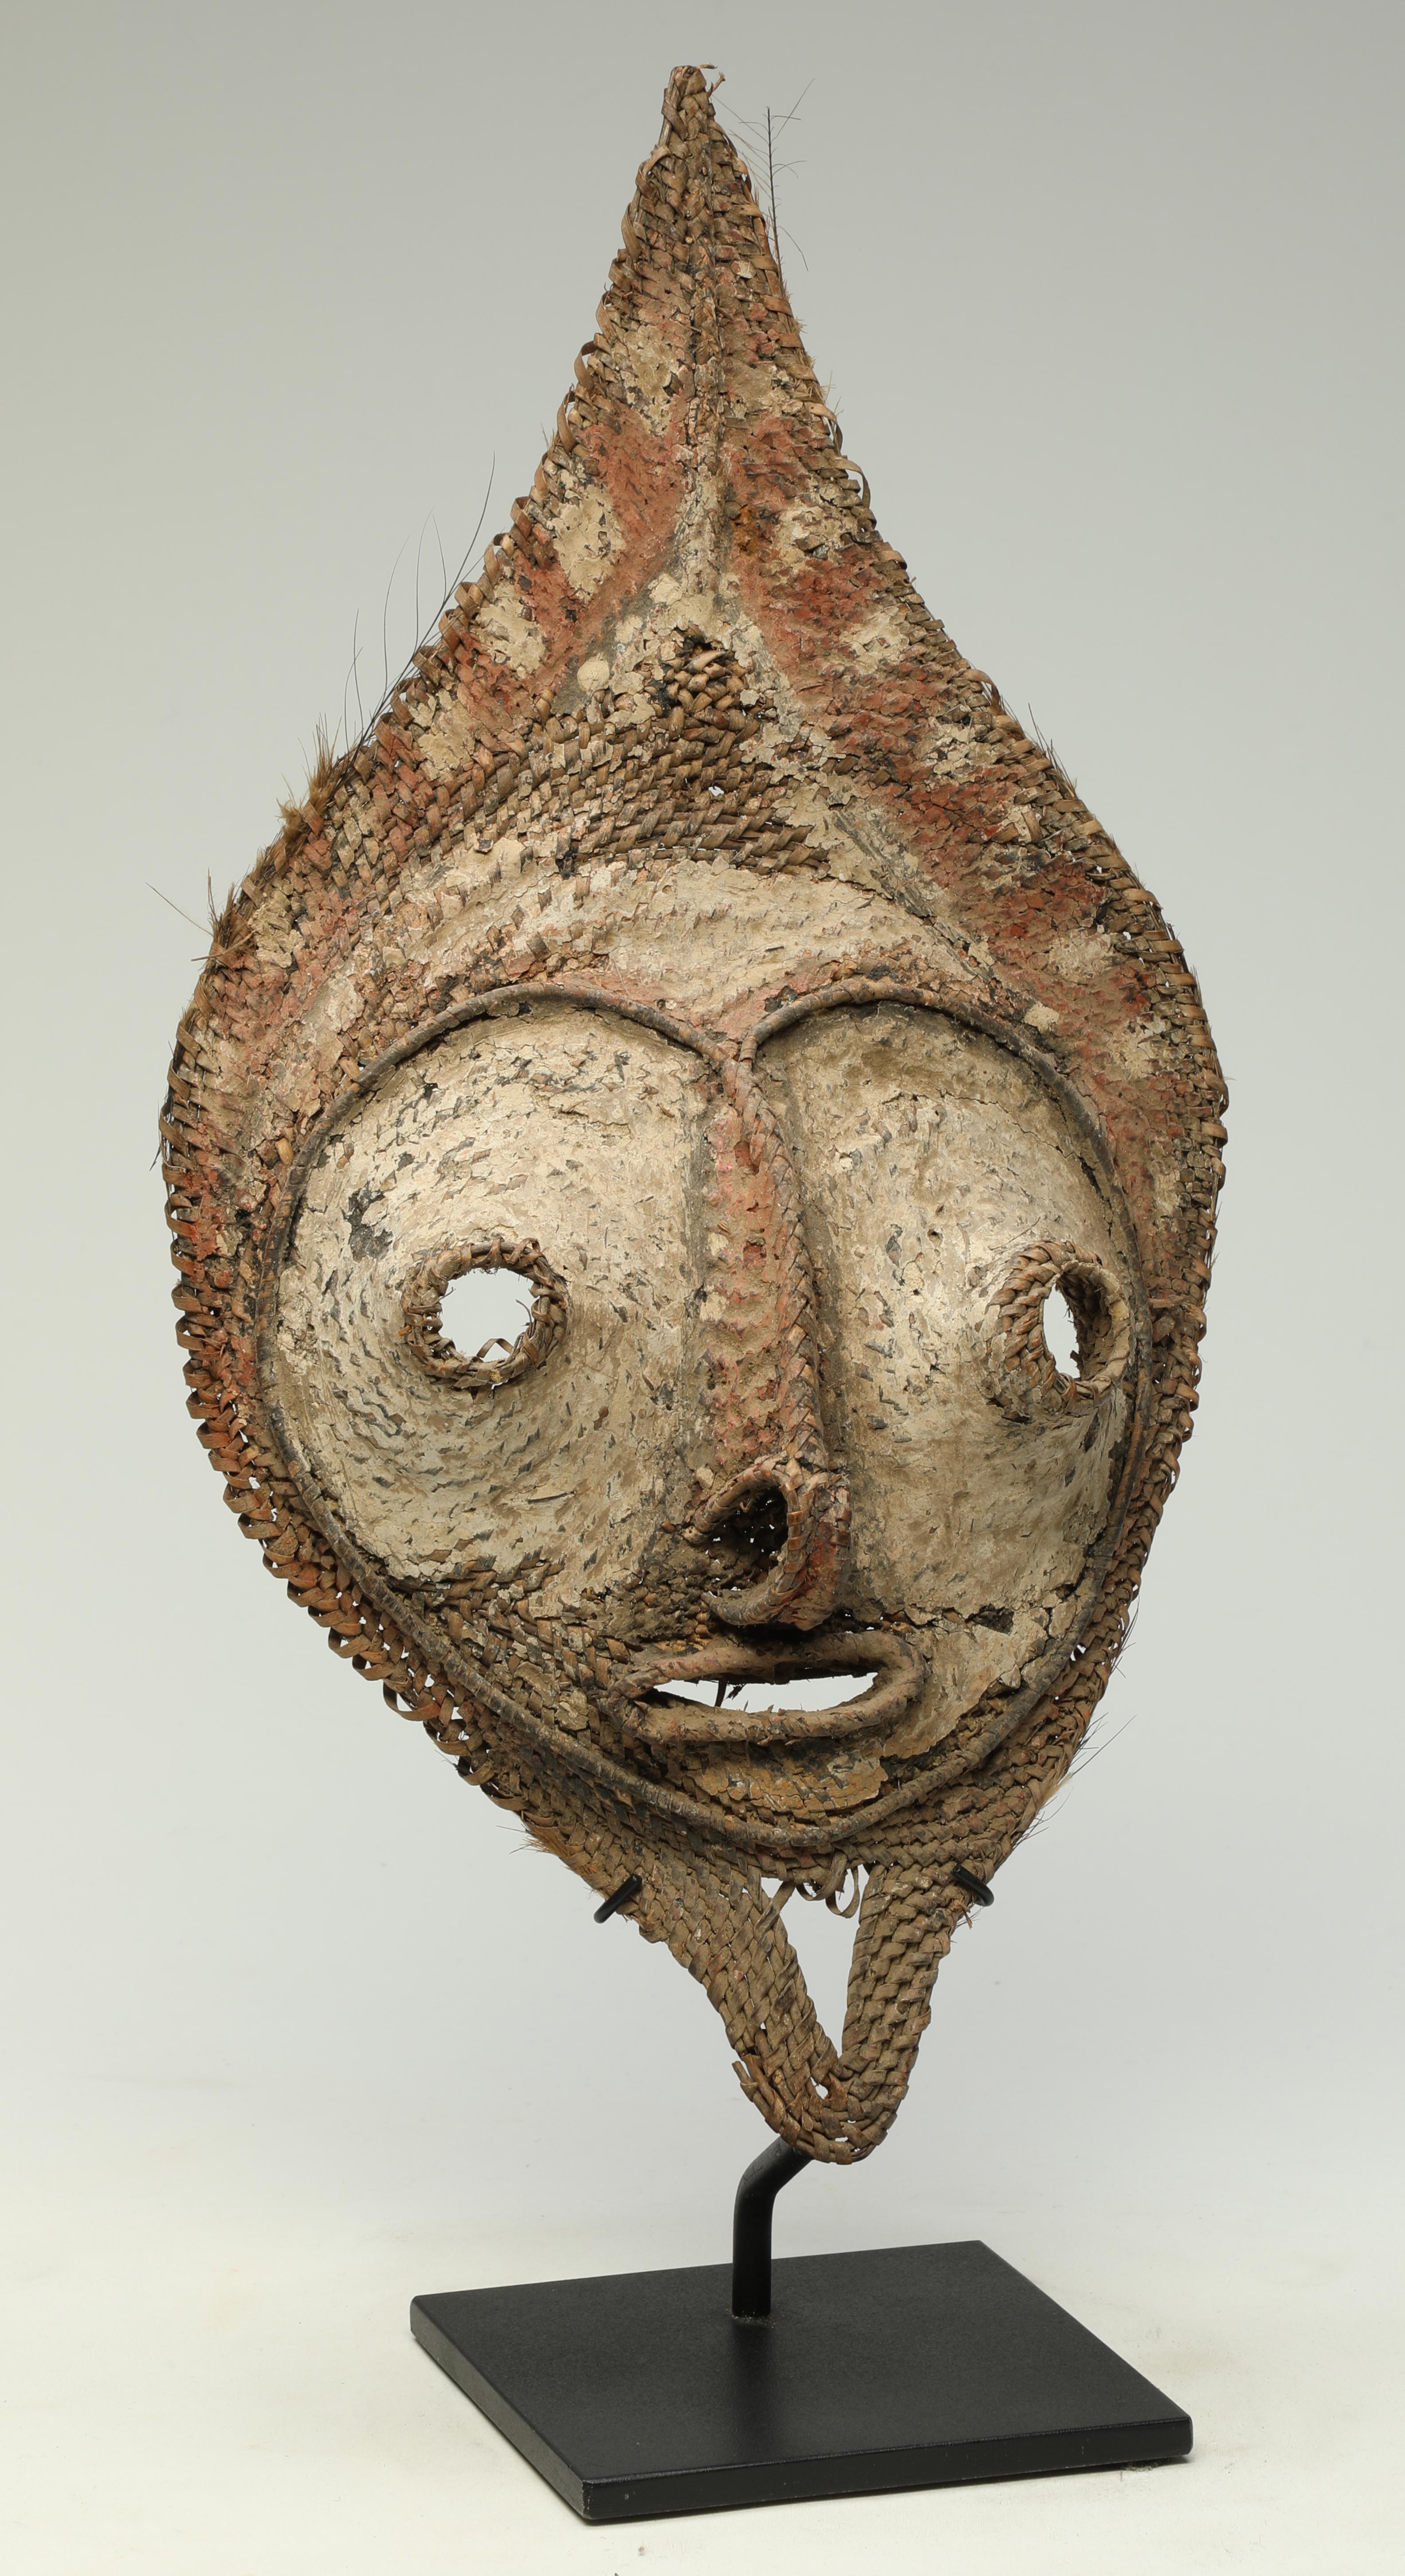 Masque en raphia tissé serré Sepik de Papouasie-Nouvelle-Guinée précoce provenant d'une monnaie de prix de la mariée talipun. 
Des zones de pigments blancs, noirs et rouges. Merveilleux visage en forme de cœur avec des yeux et une bouche ouverts.
Ce